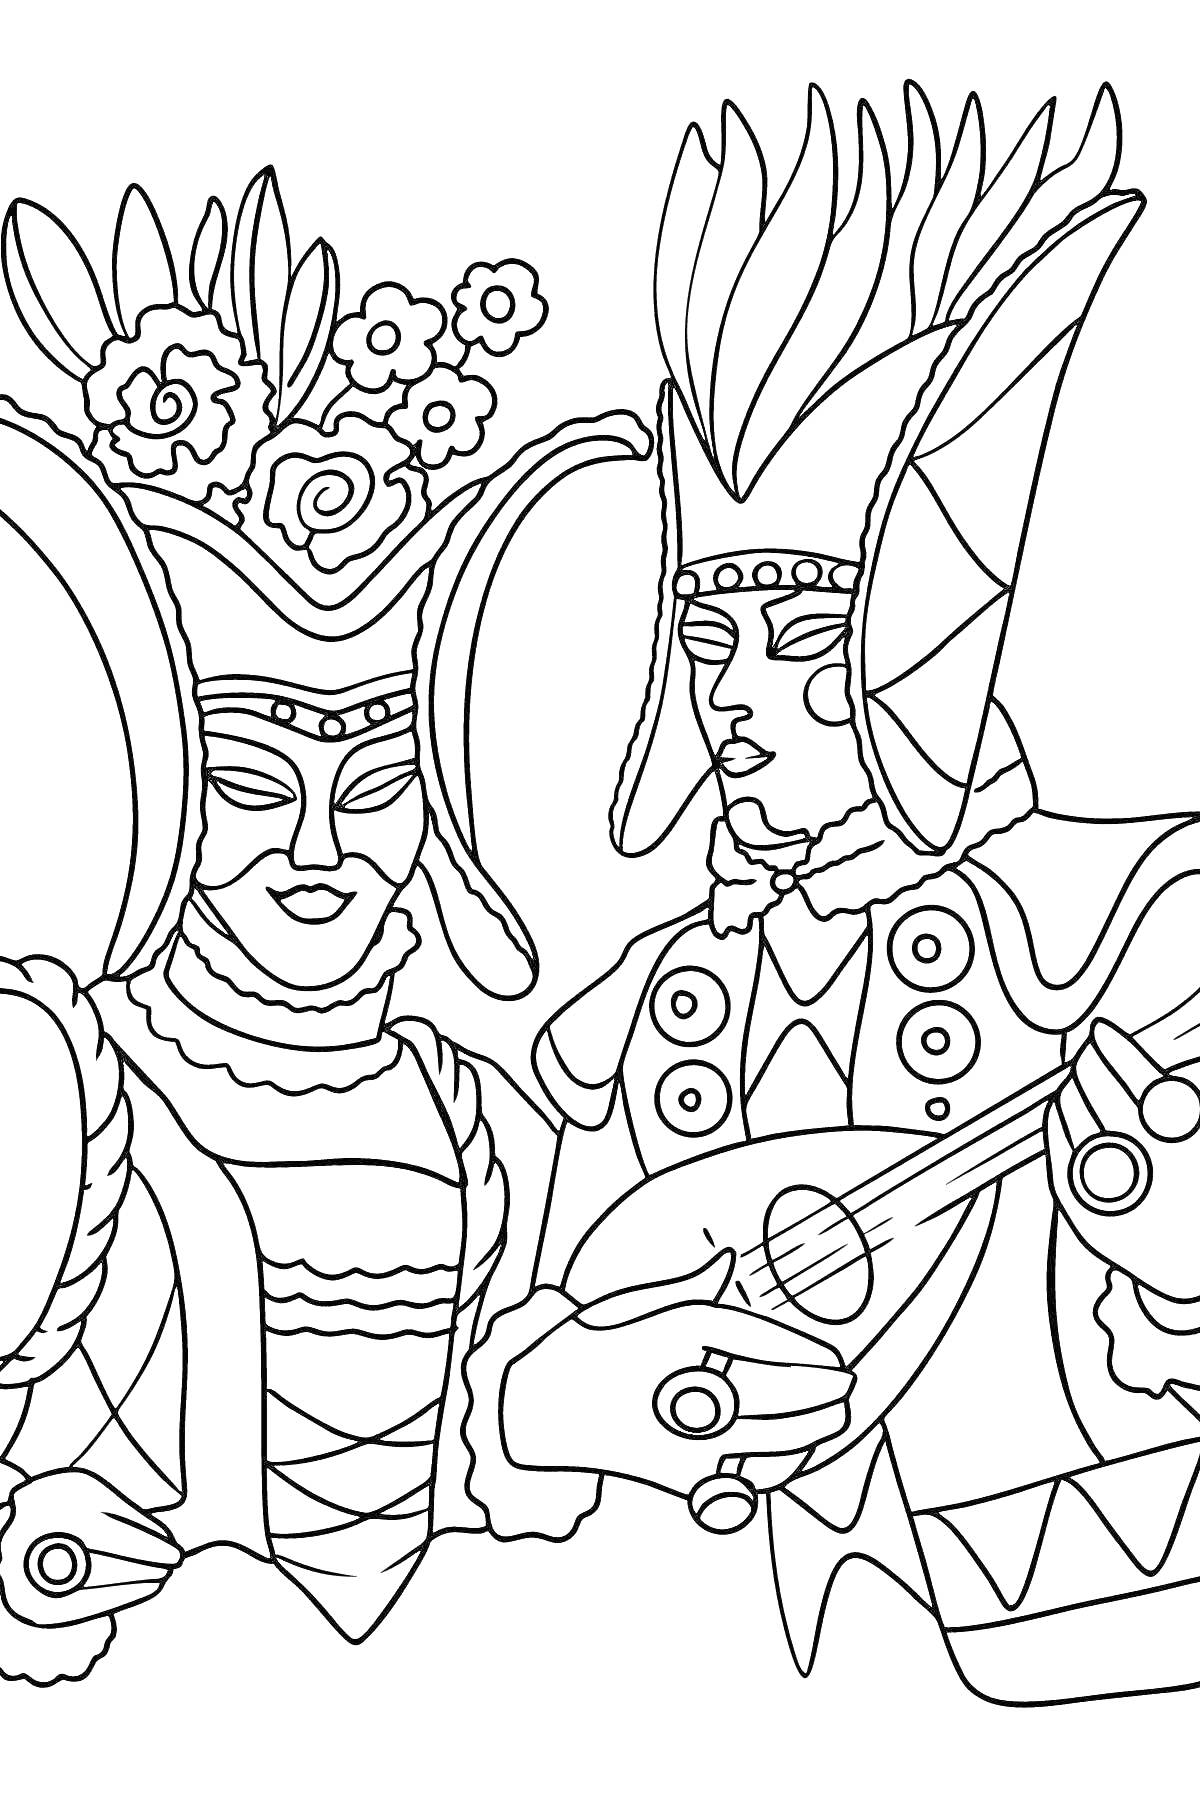 Раскраска Два человека в карнавальных костюмах с экстравагантными головными уборами; один из них играет на мандолине